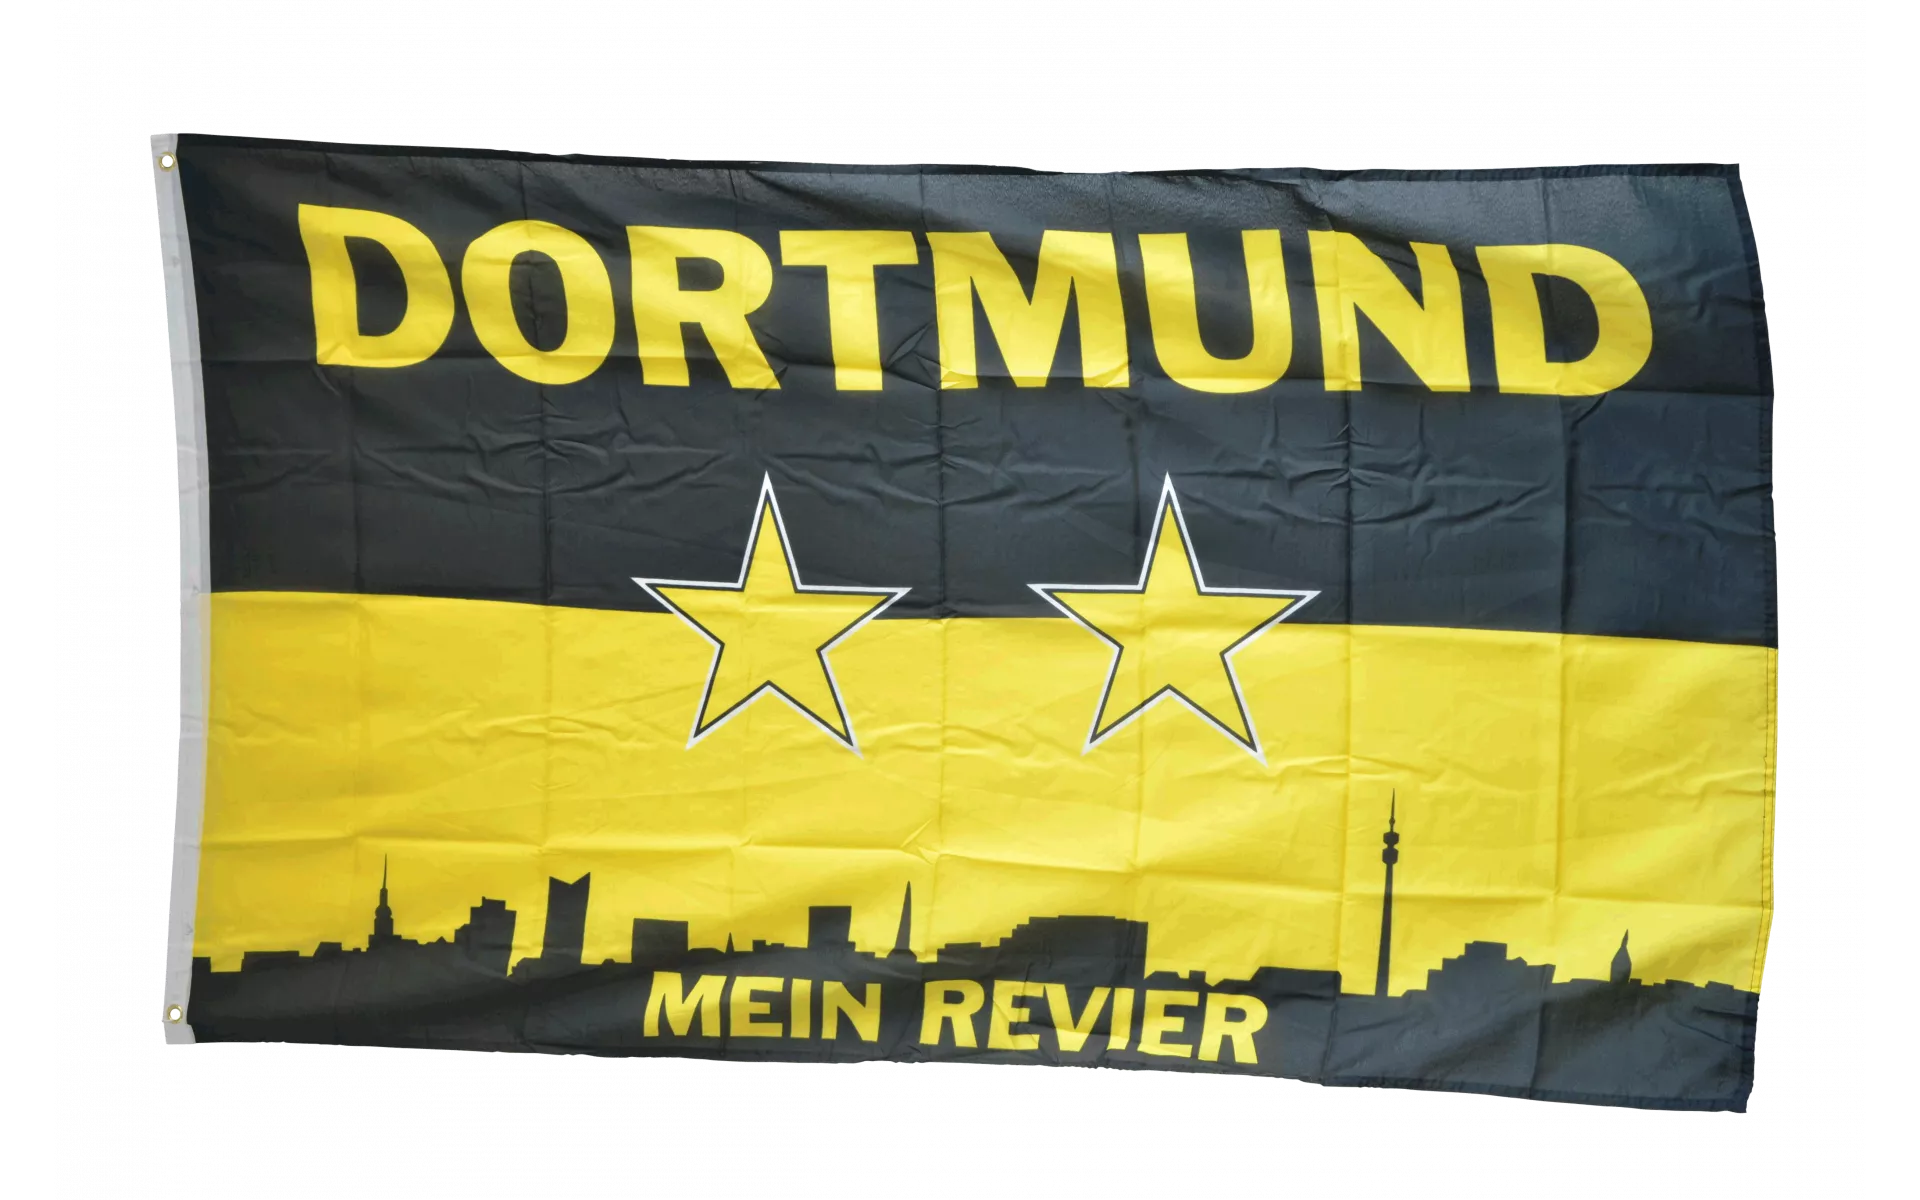 Fanflagge Dortmund Mein Revier Sterne Hissflagge Fußball Fahnen Flaggen 150x250c 